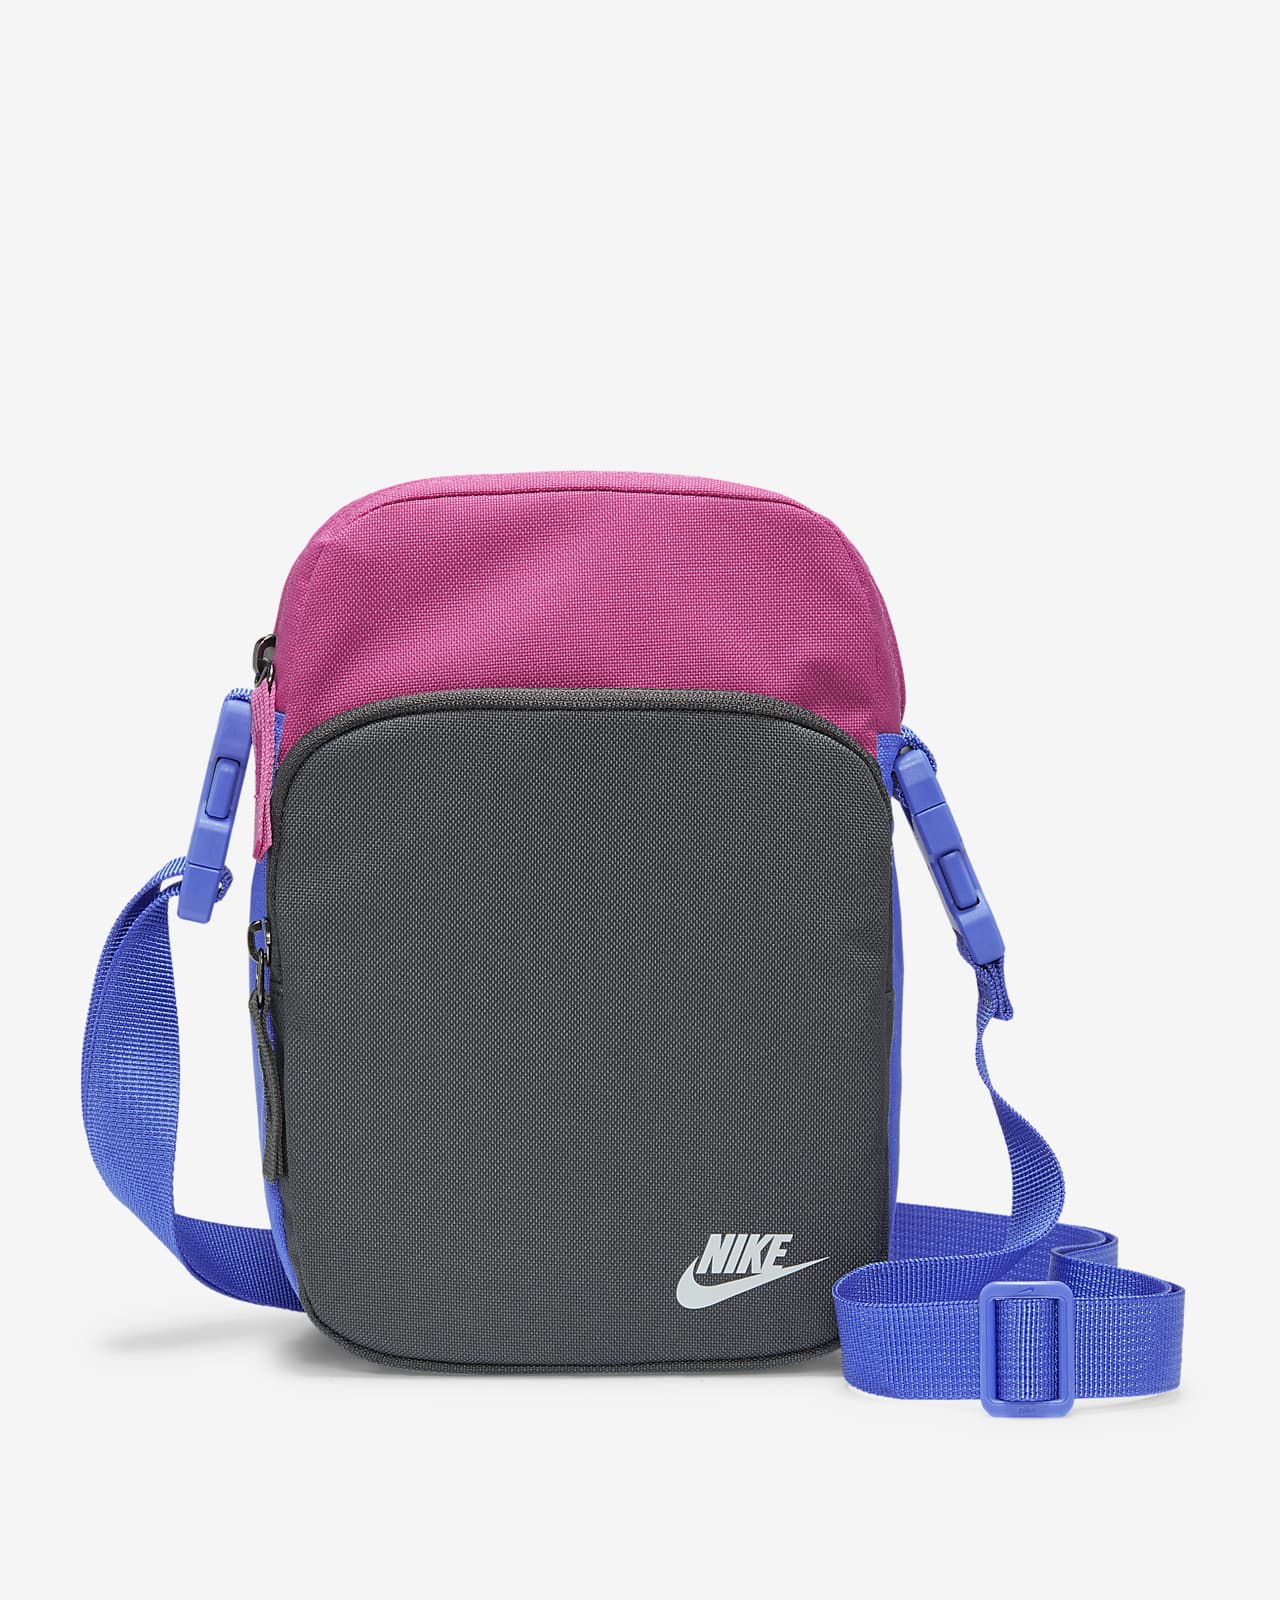 Nike Sb Heritage Crossbody Bag | semashow.com